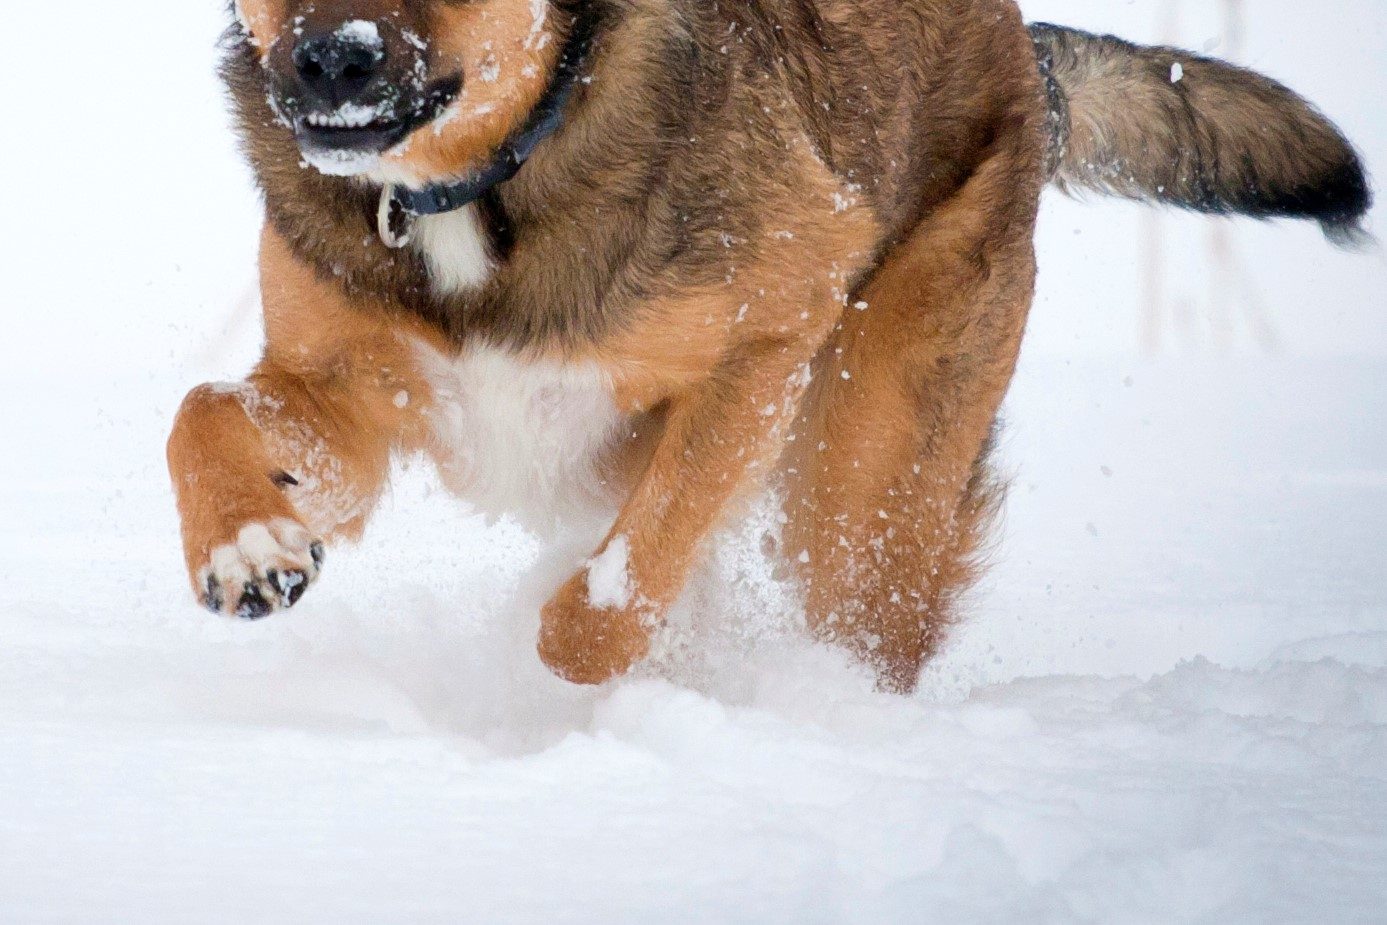 雪に埋もれた飼い主を助けたい 救出に貢献した賢いヒーロー犬が話題に Sirabee